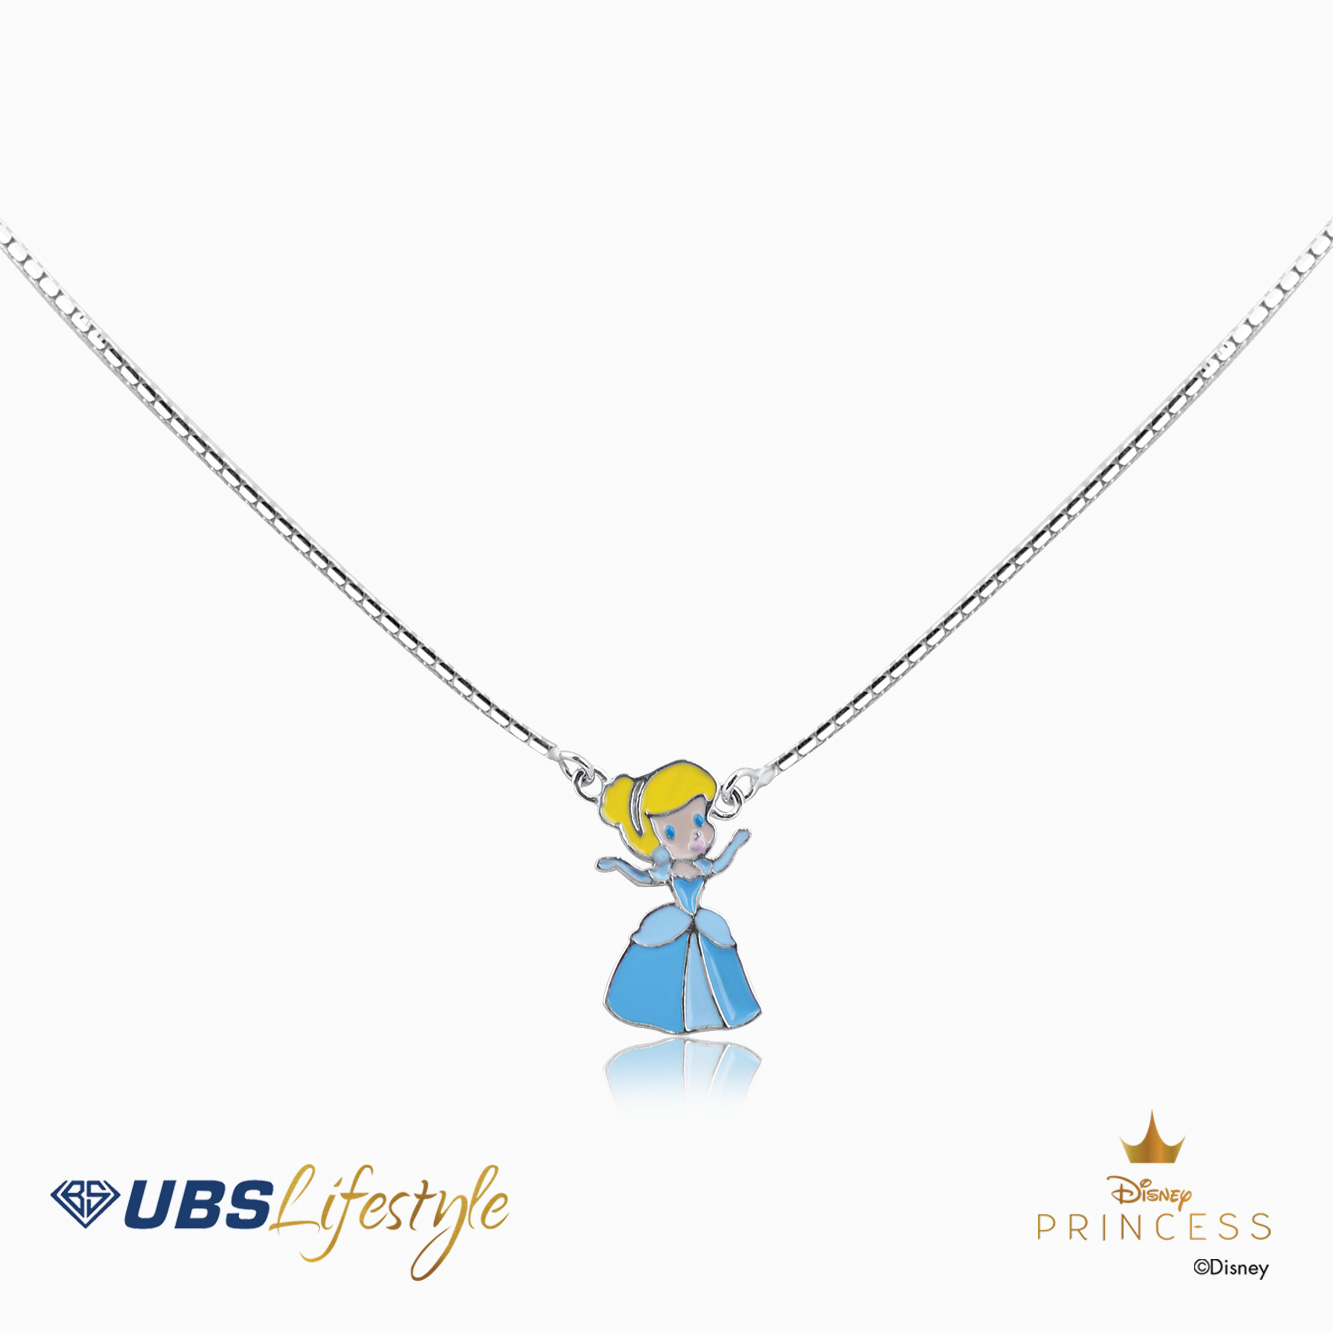 UBS Kalung Emas Anak Disney Princess Cinderella - Kky0149 - 17K